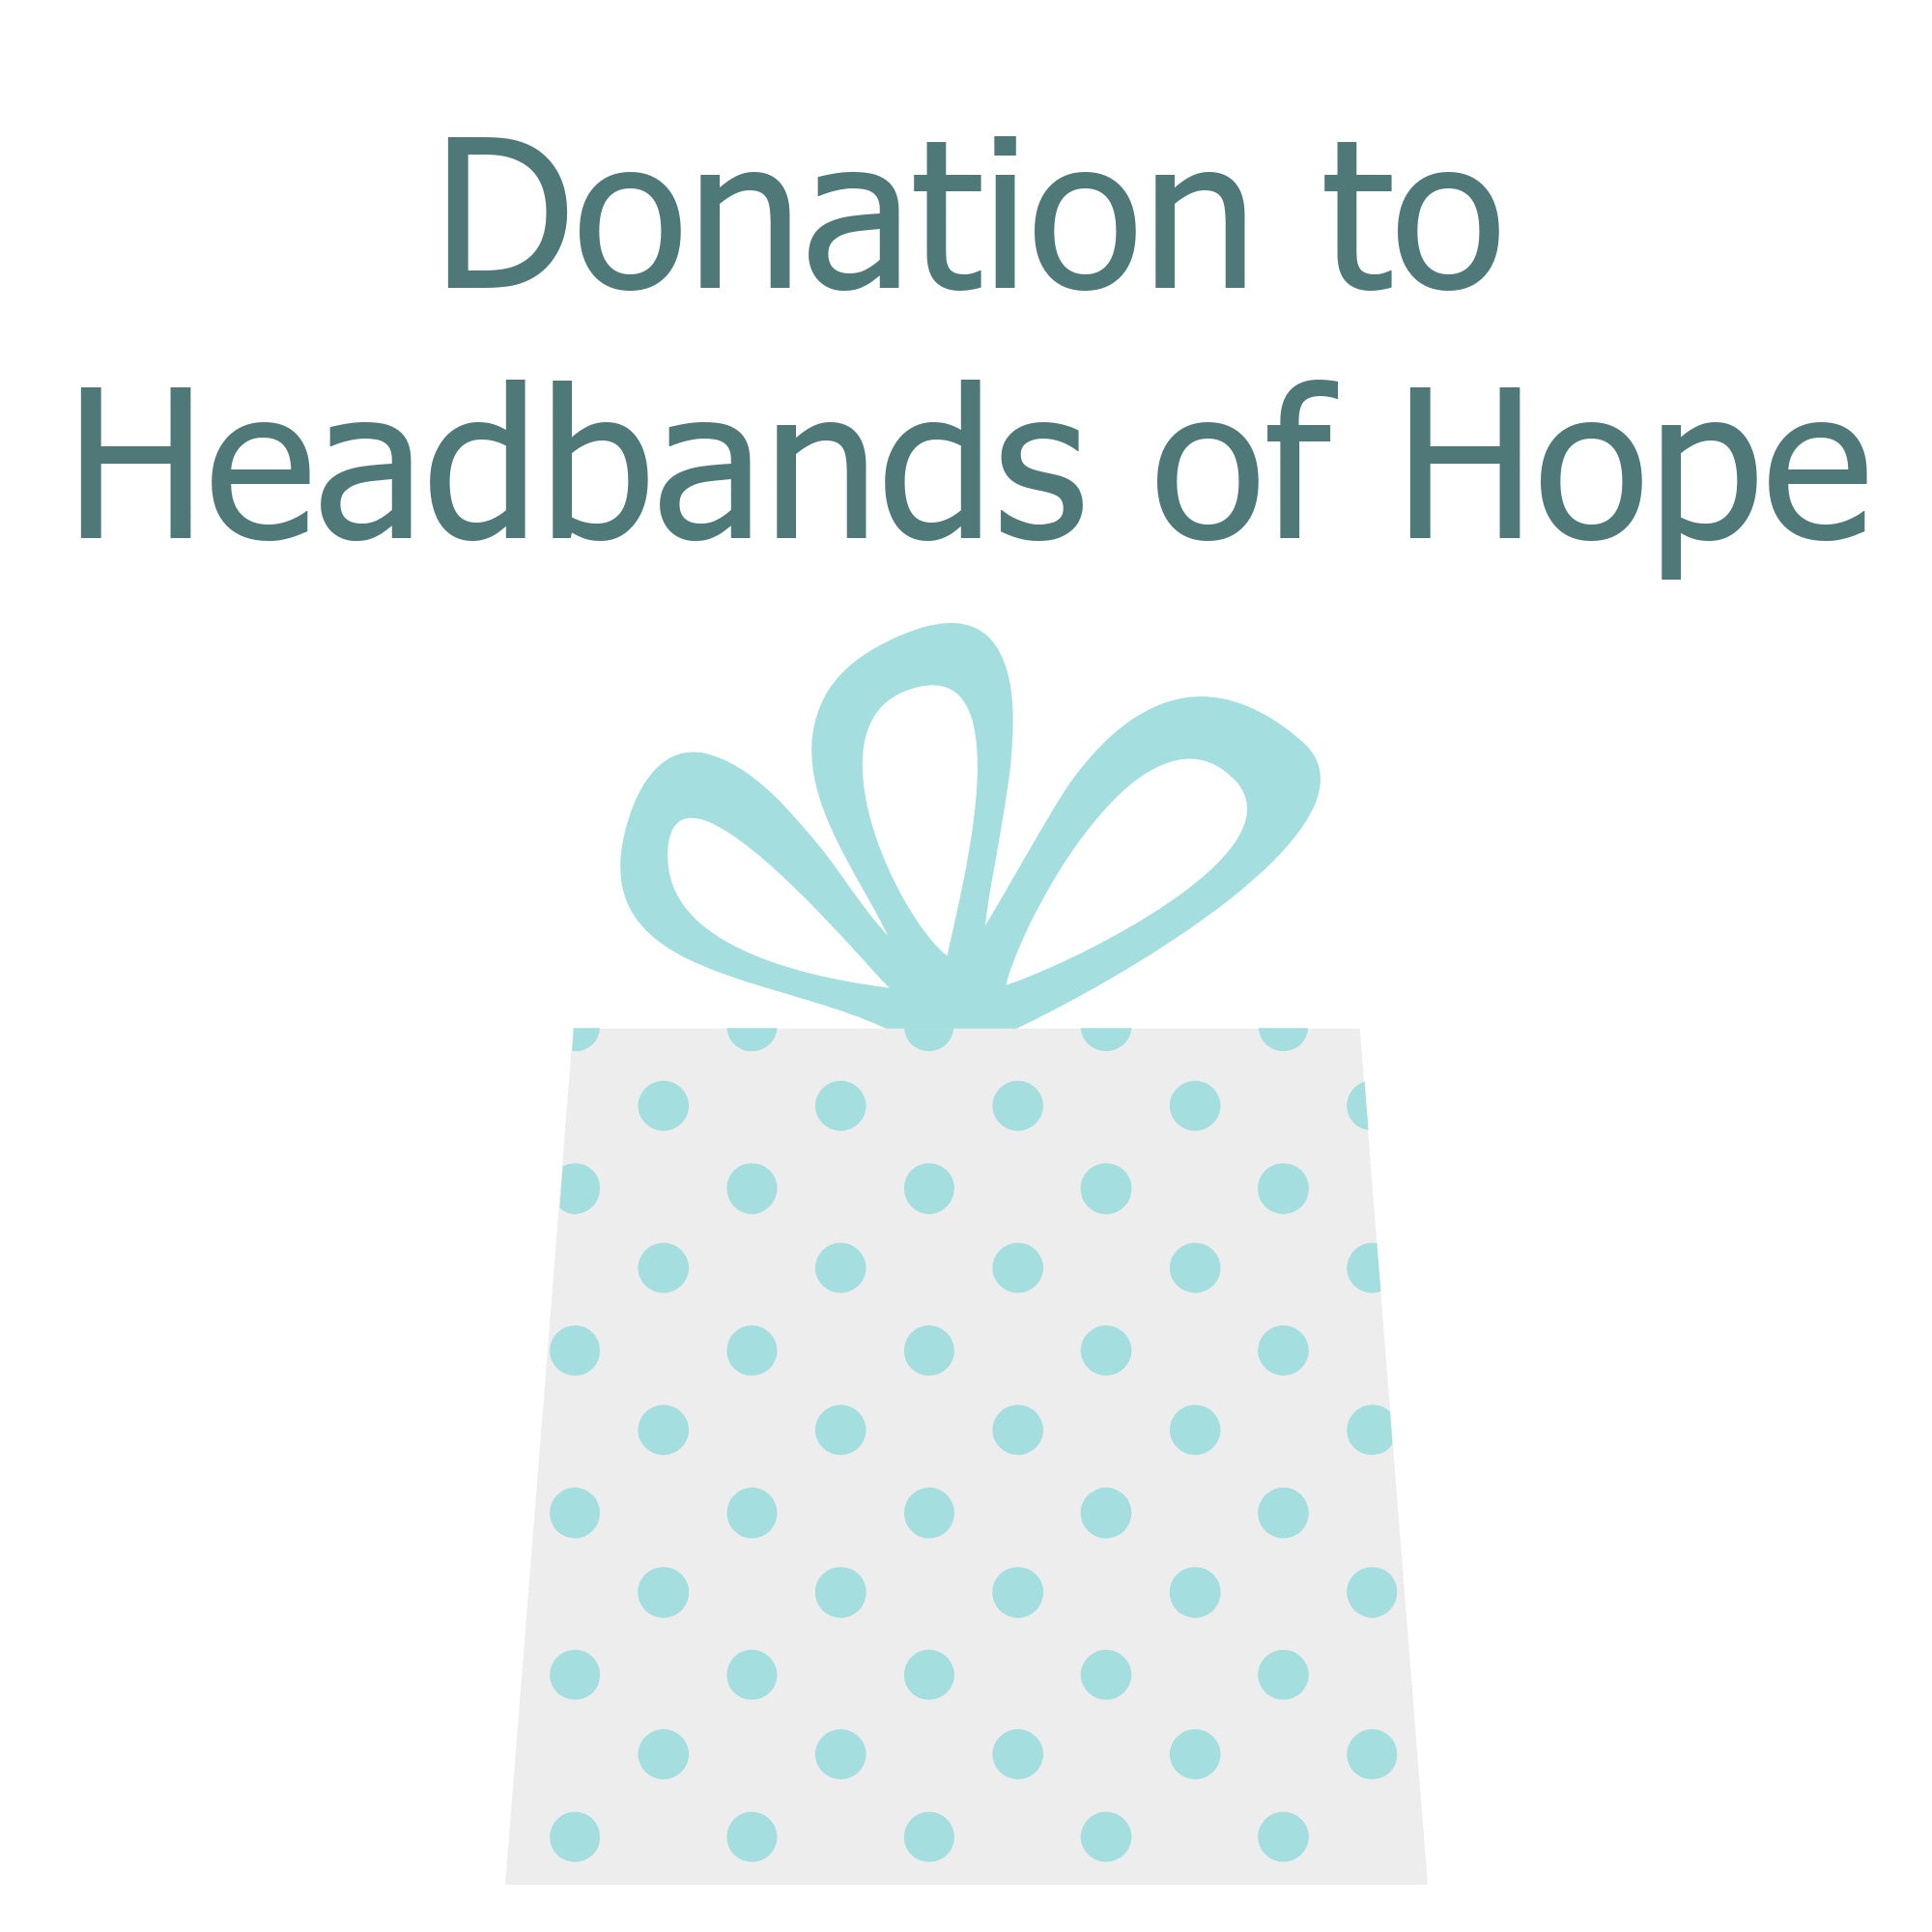 Monetary Donation to Headbands of Hope